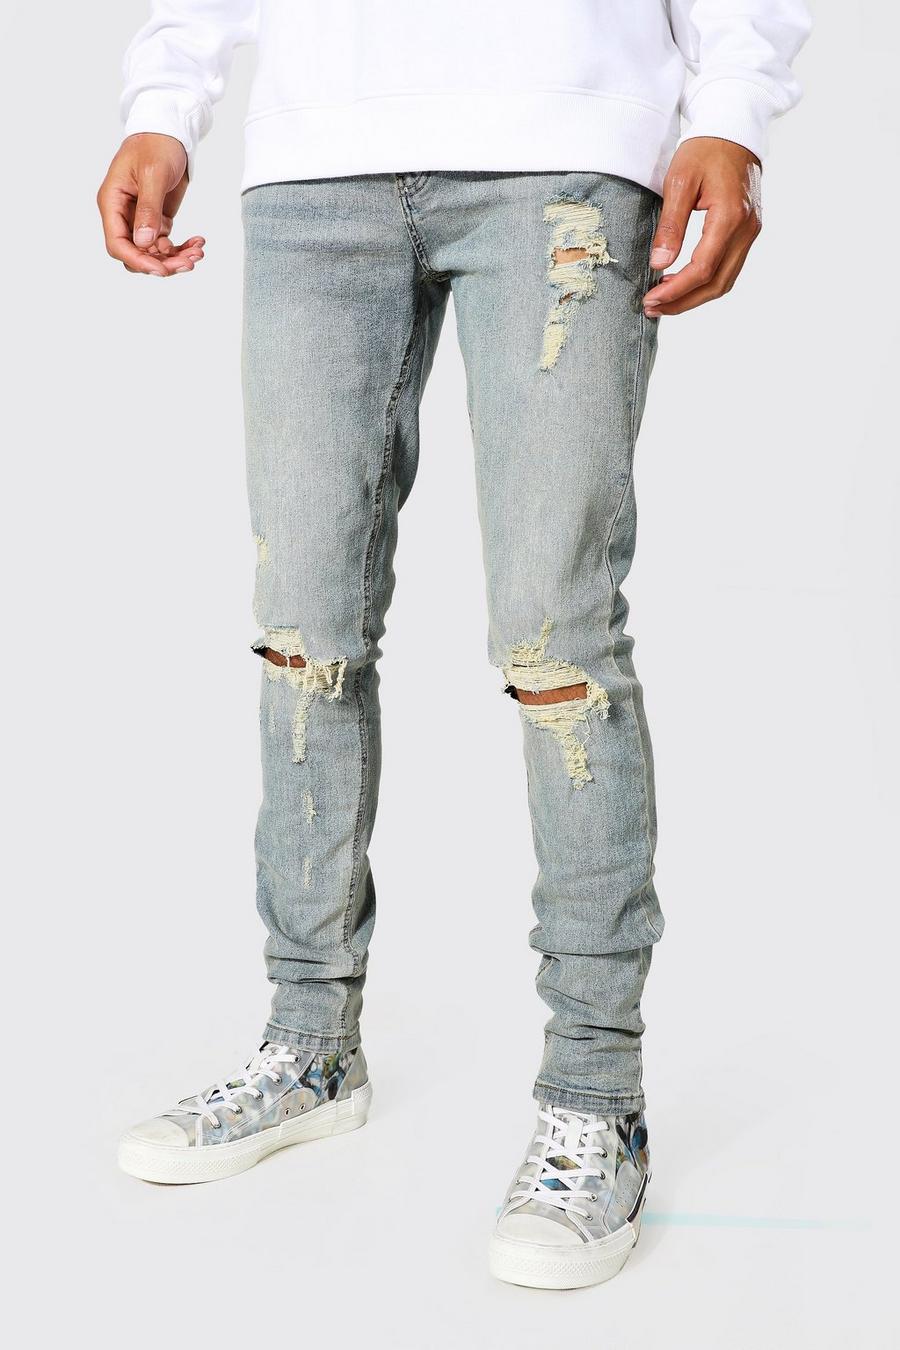 כחול עתיק סקיני ג'ינס עם קרעים ובד משופשף בברכיים, לגברים גבוהים